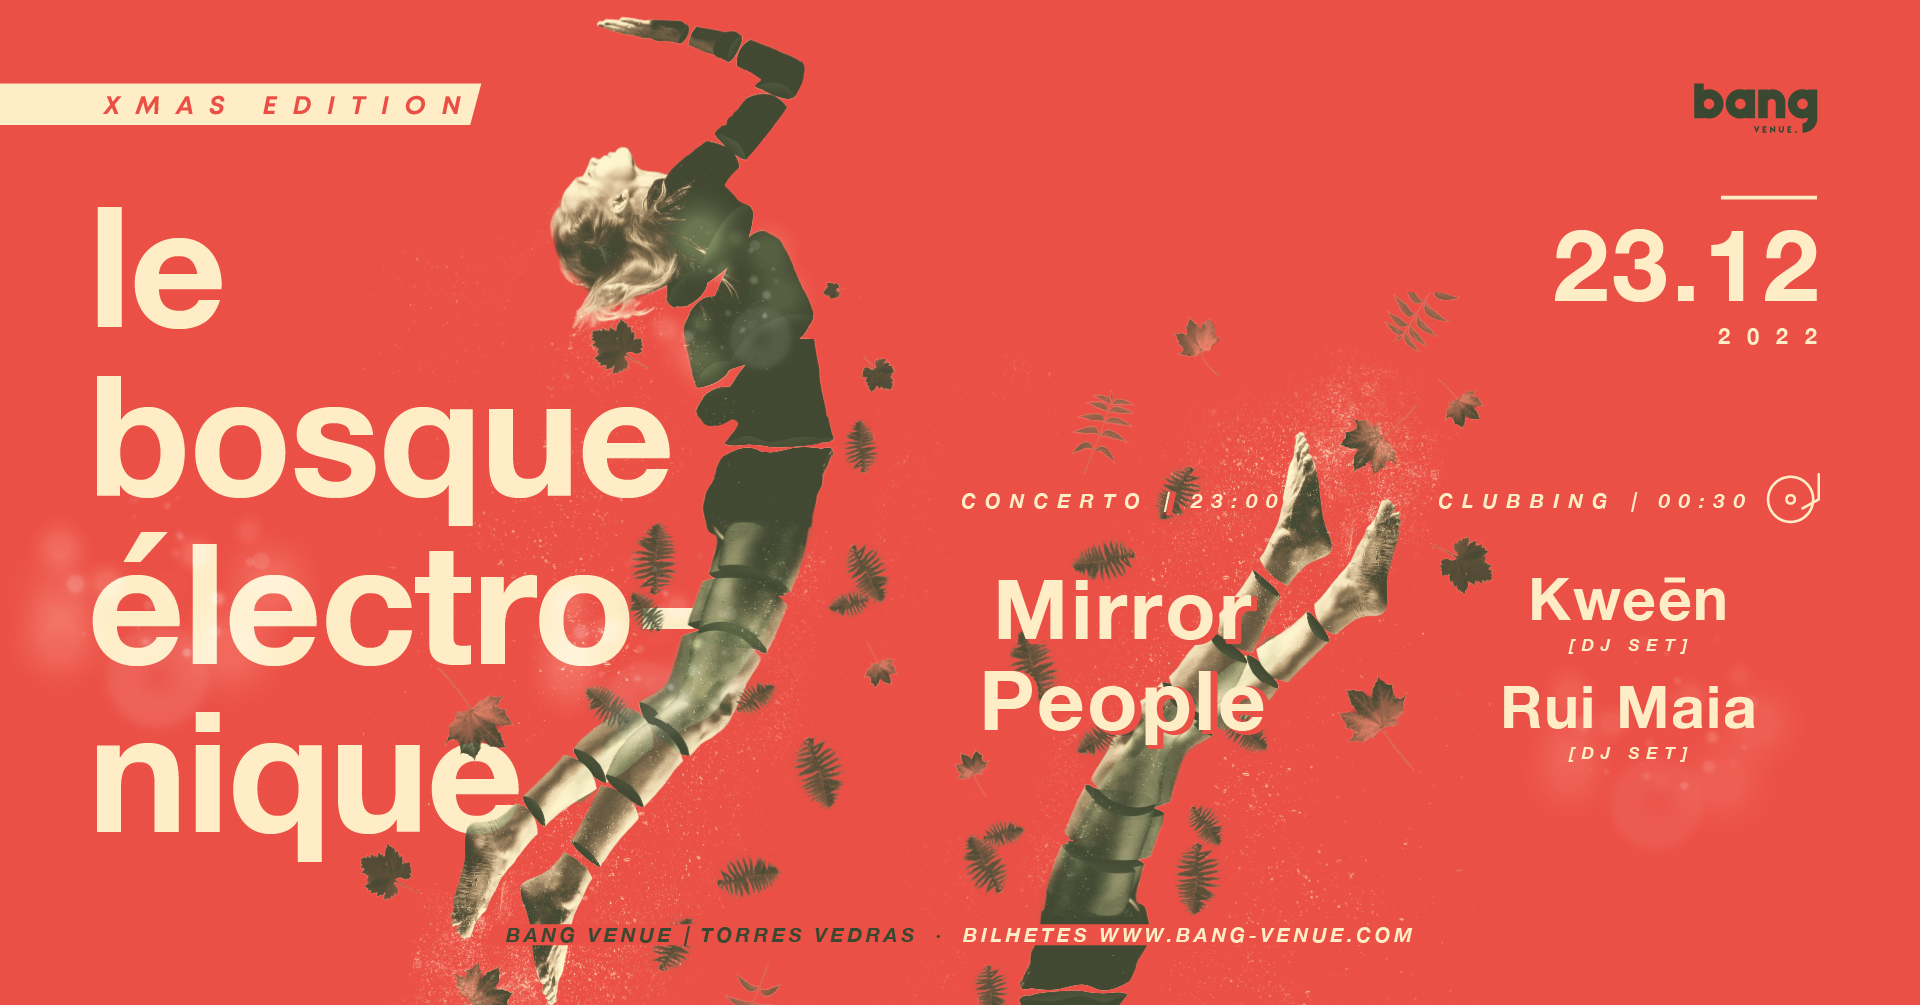 Le Bosque Electronique | Concerto Mirror People | Clubbing Kween + Rui Maia | Bang Venue